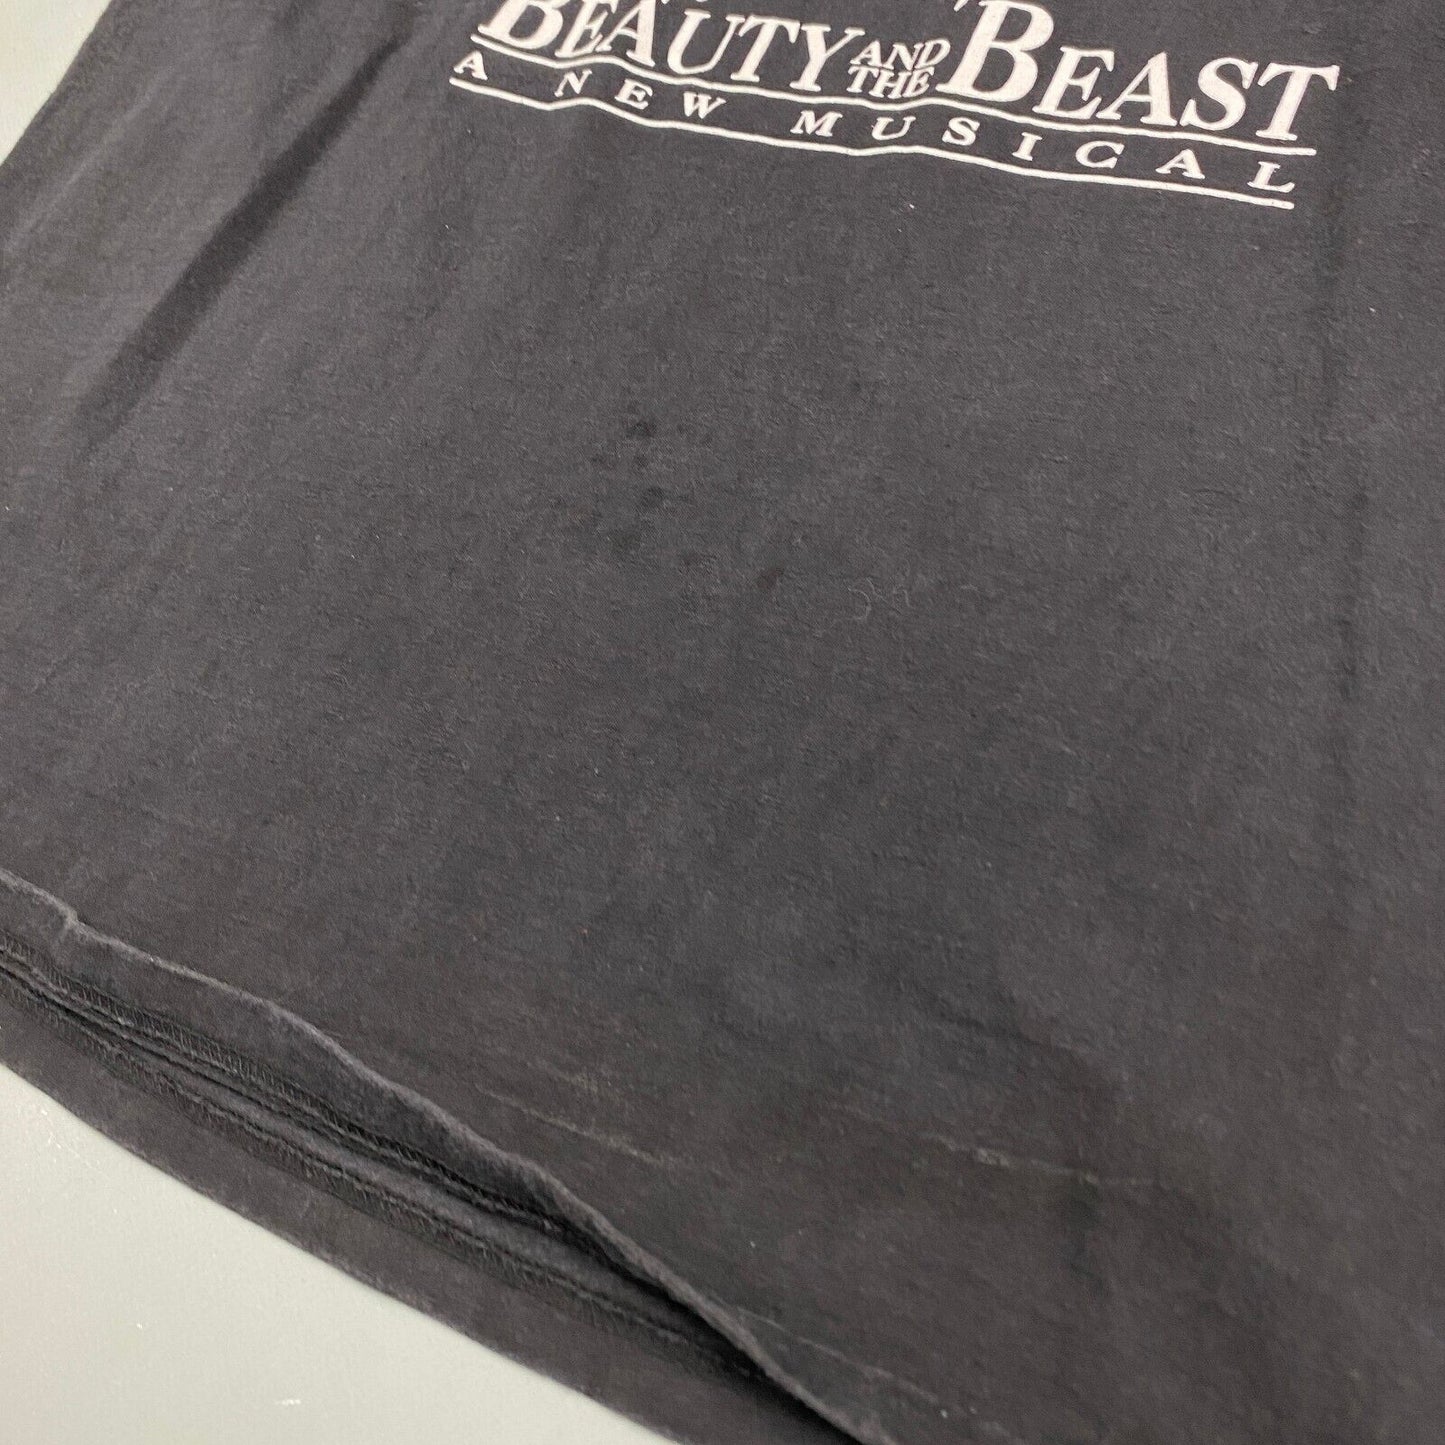 VINTAGE 90s Disney Beauty & The Beast Musical World Tour T-Shirt sz L Men Adult